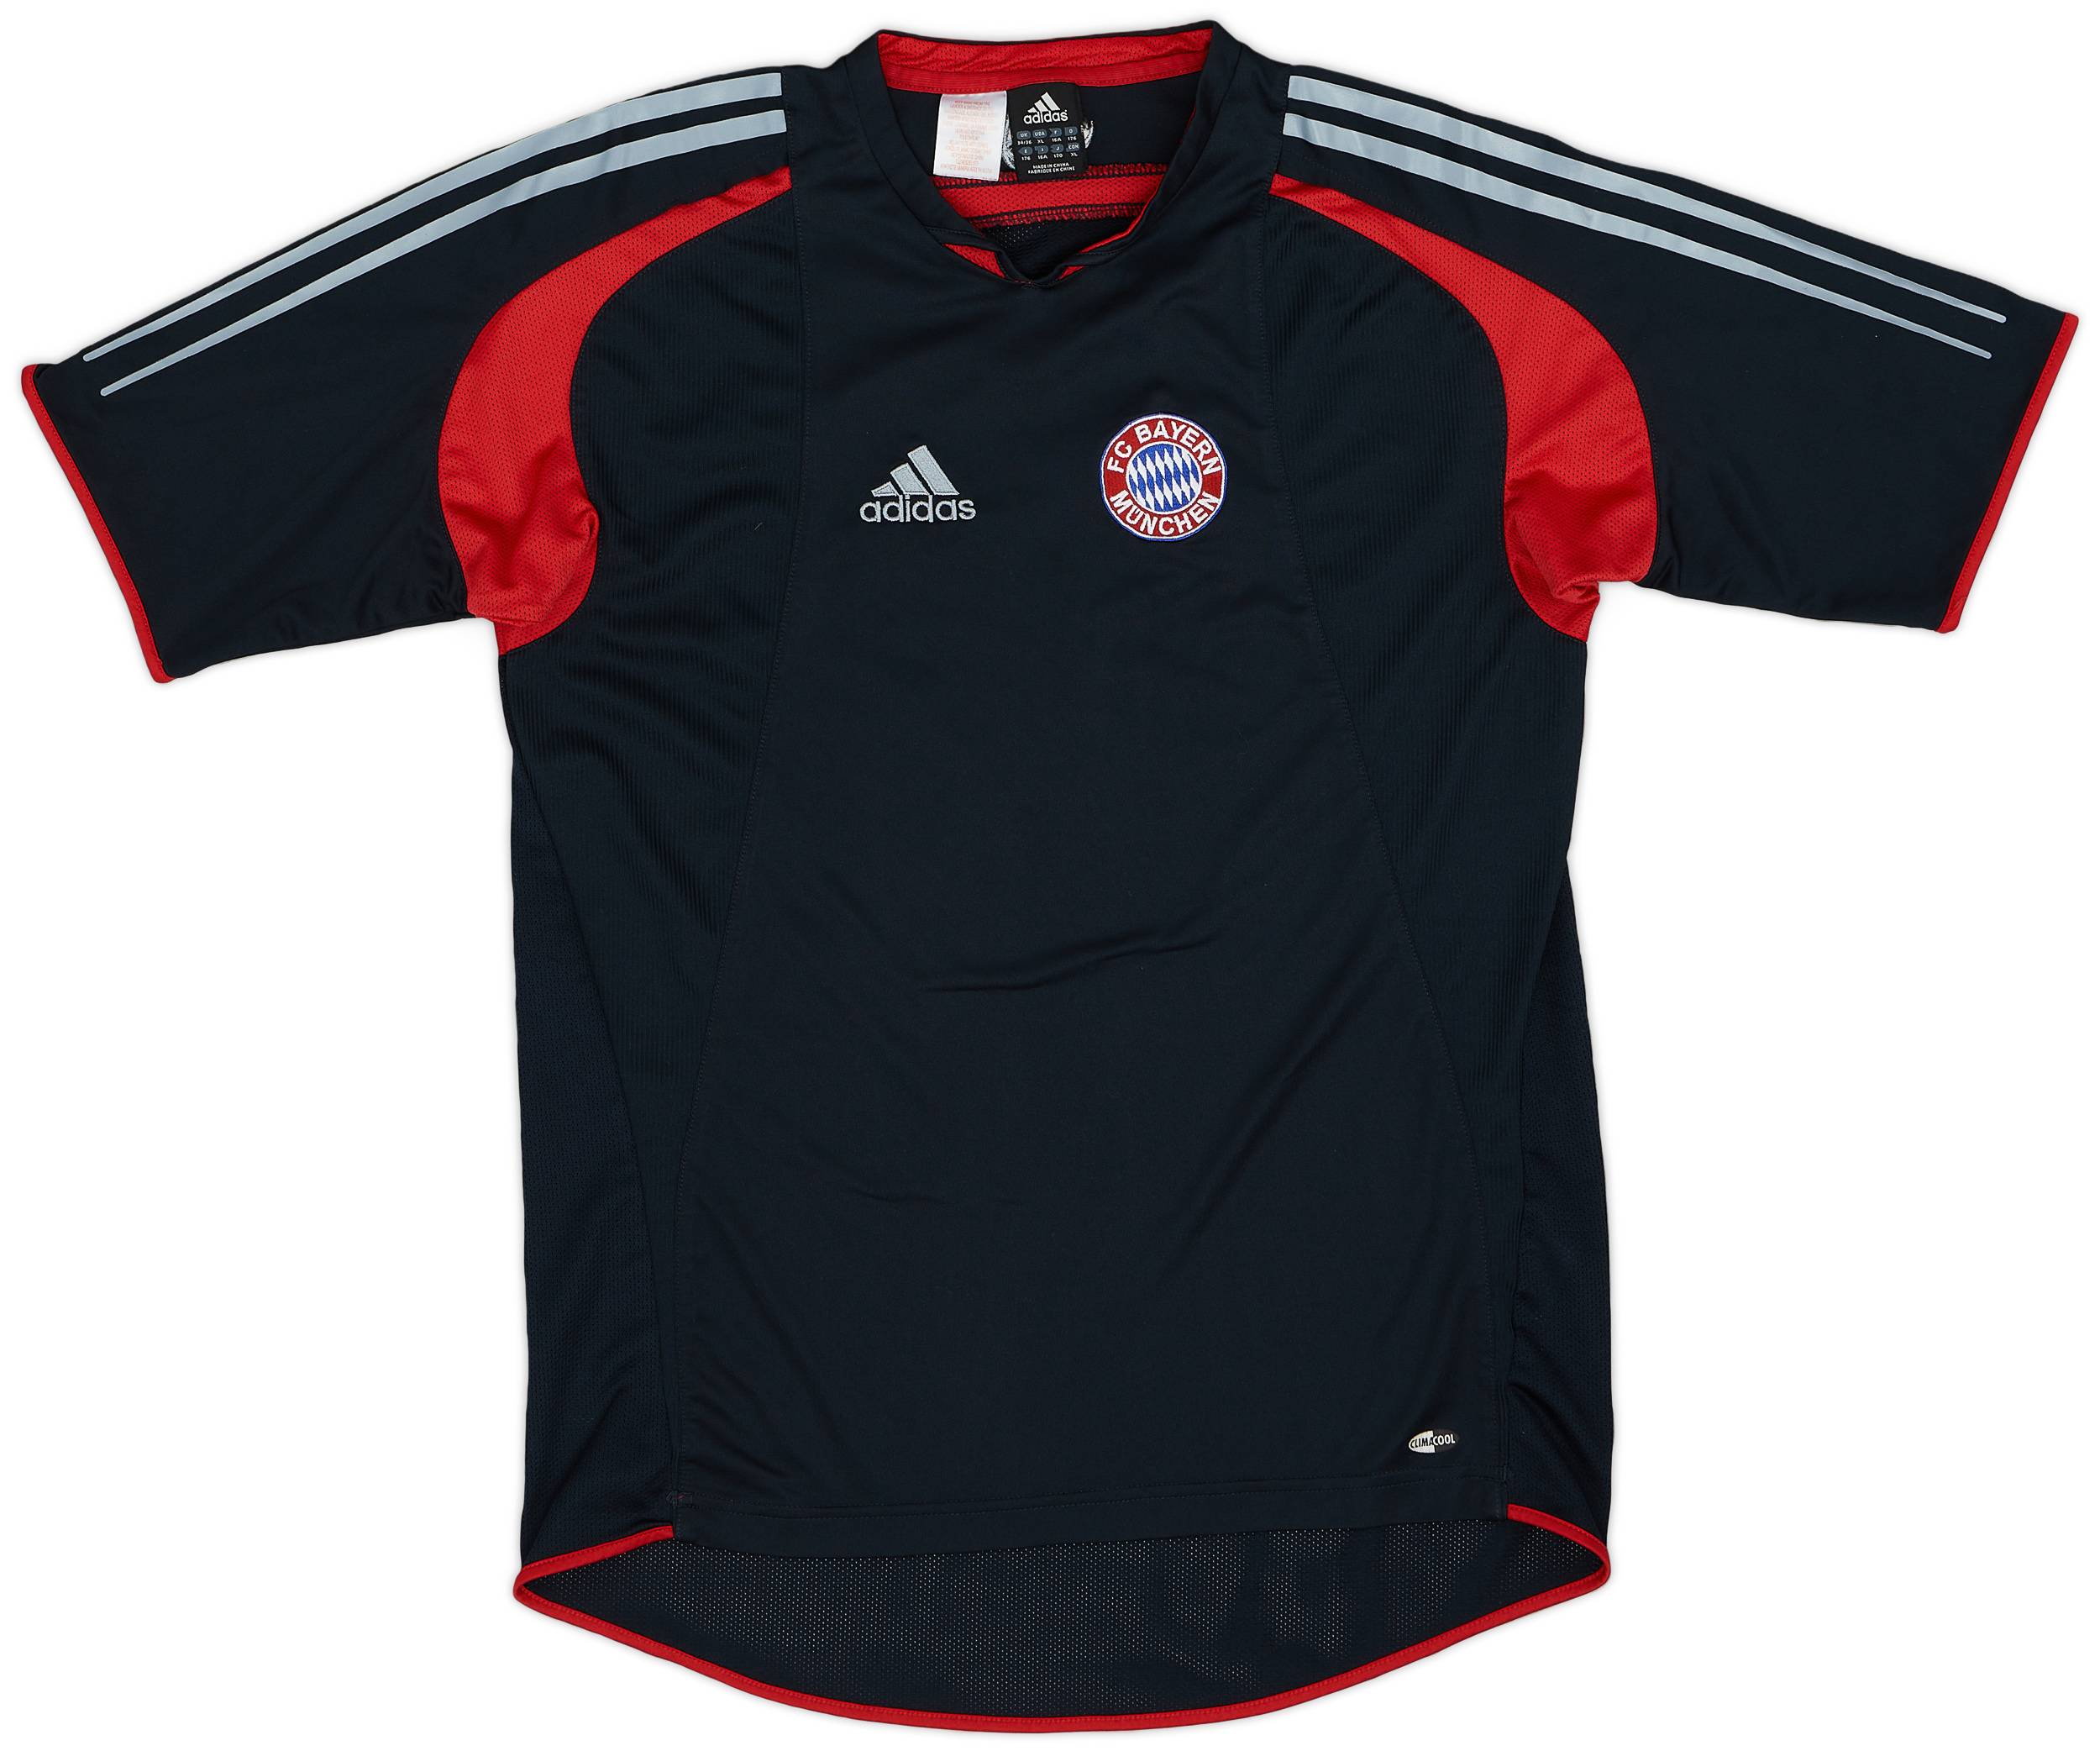 2004-05 Bayern Munich adidas Training Shirt - 9/10 - (XL.Boys)